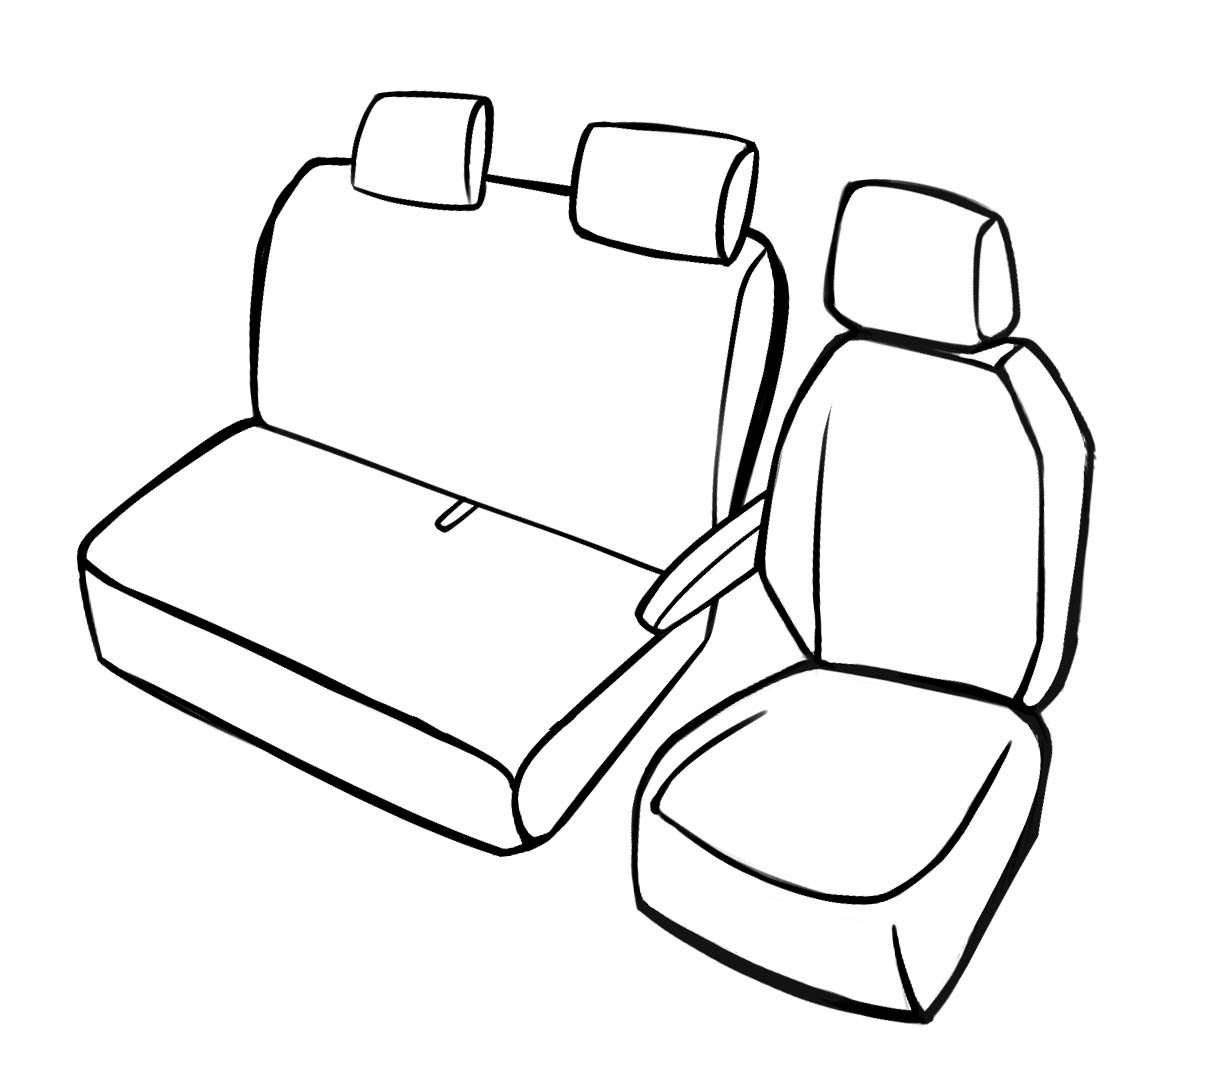 Passform Premium Sitzbezug für Renault Trafic 2014-Heute, Einzelsitzbezug vorne und Doppelbankbezug